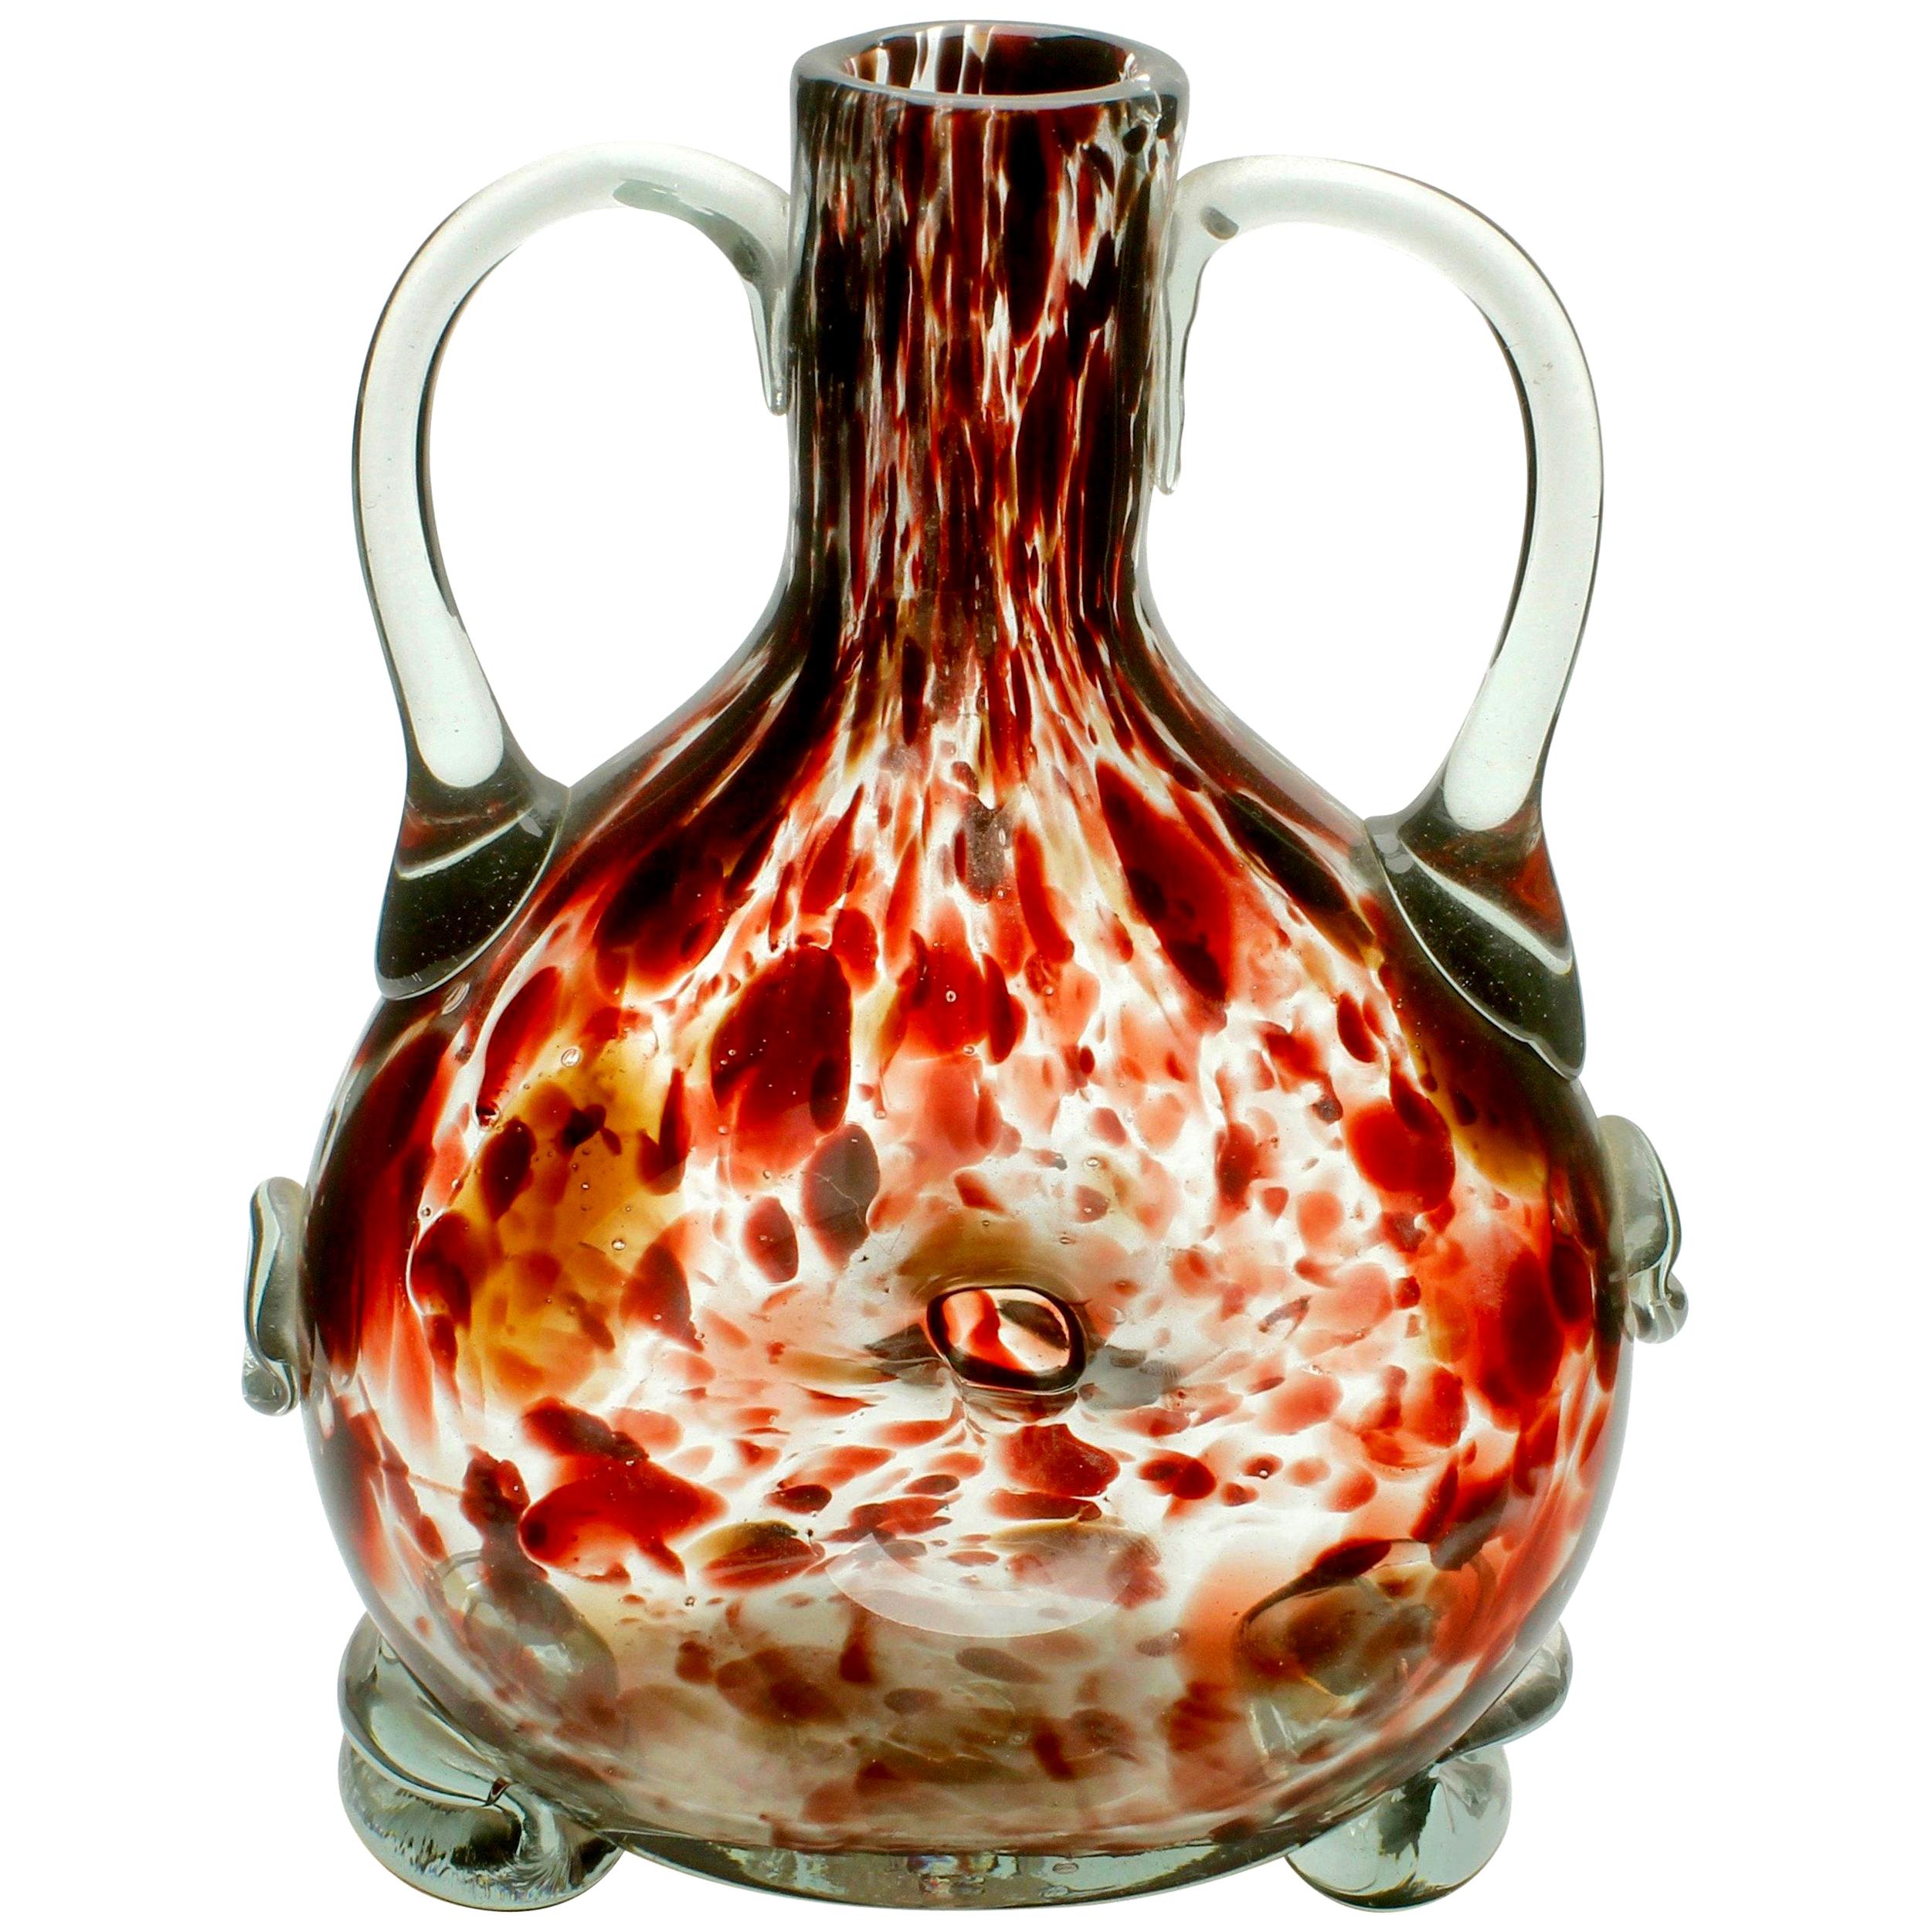 Studio Glass Vase Based on a Mouth-Blown Bottle Shape of Tortoiseshell For Sale